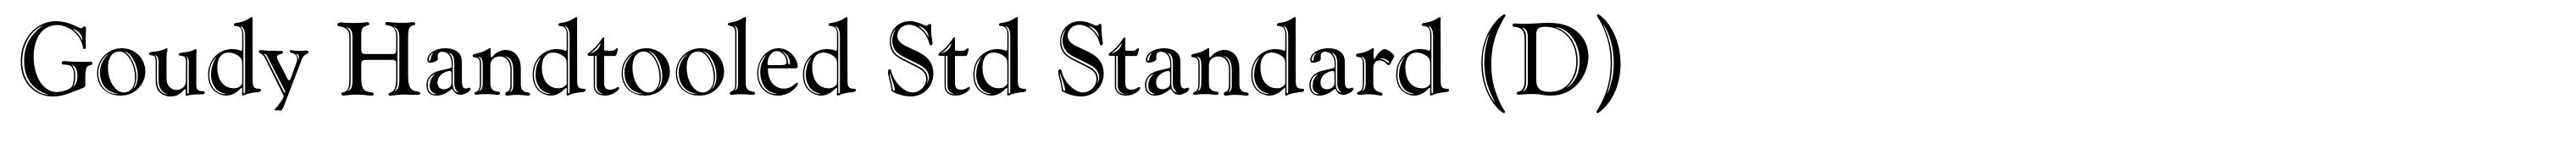 Goudy Handtooled Std Standard (D)